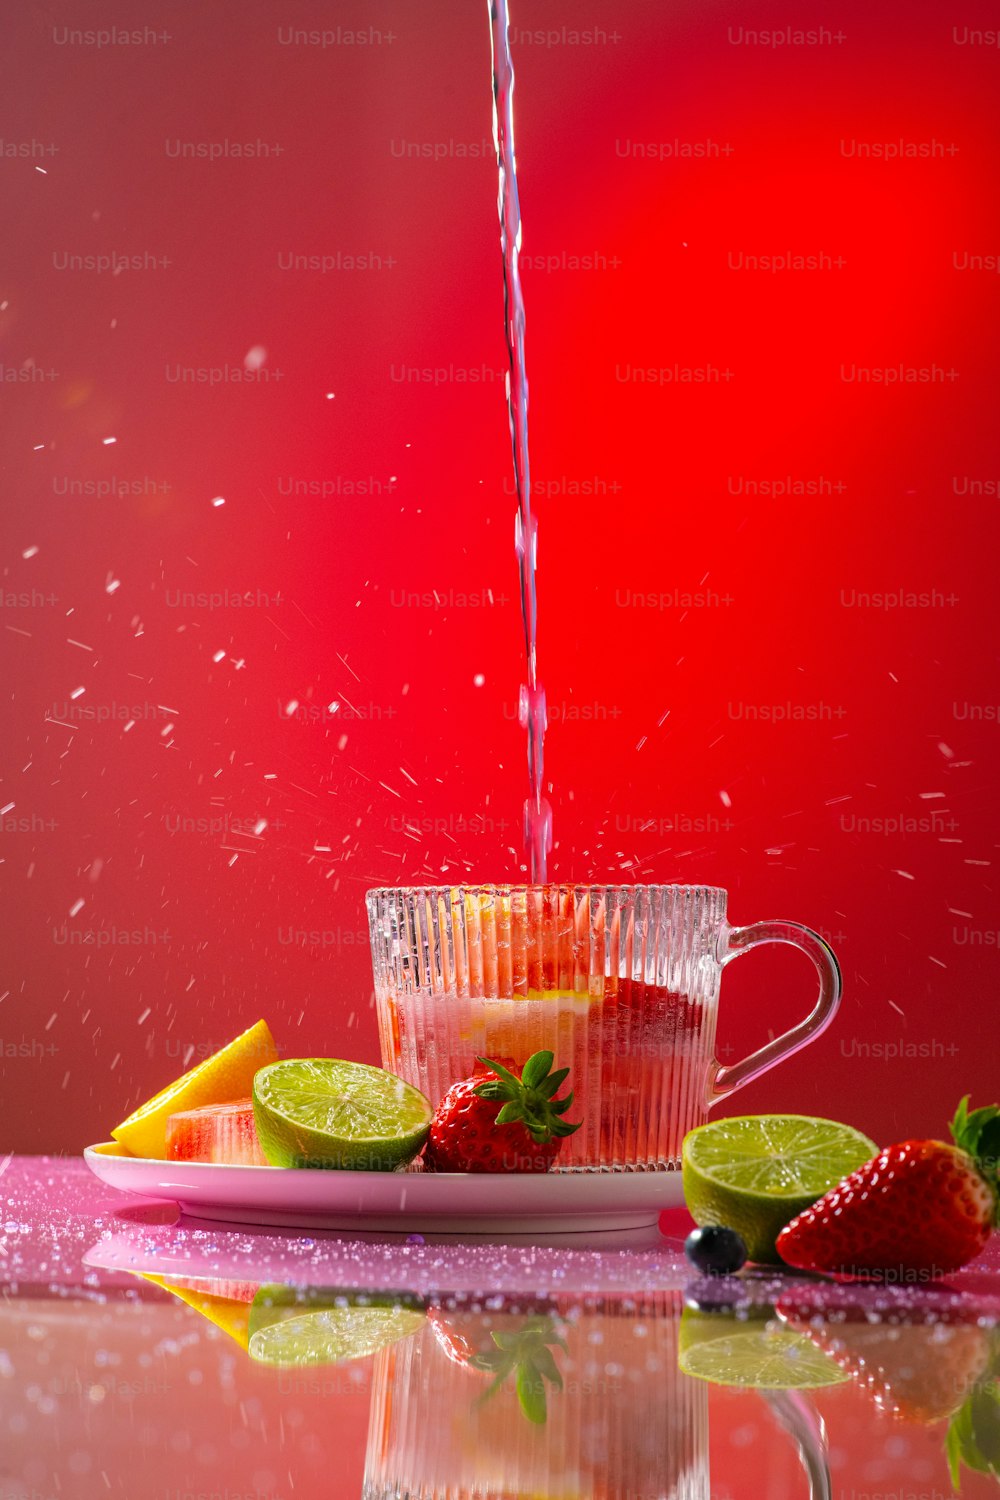 un pichet d’eau versé dans une tasse remplie de fruits